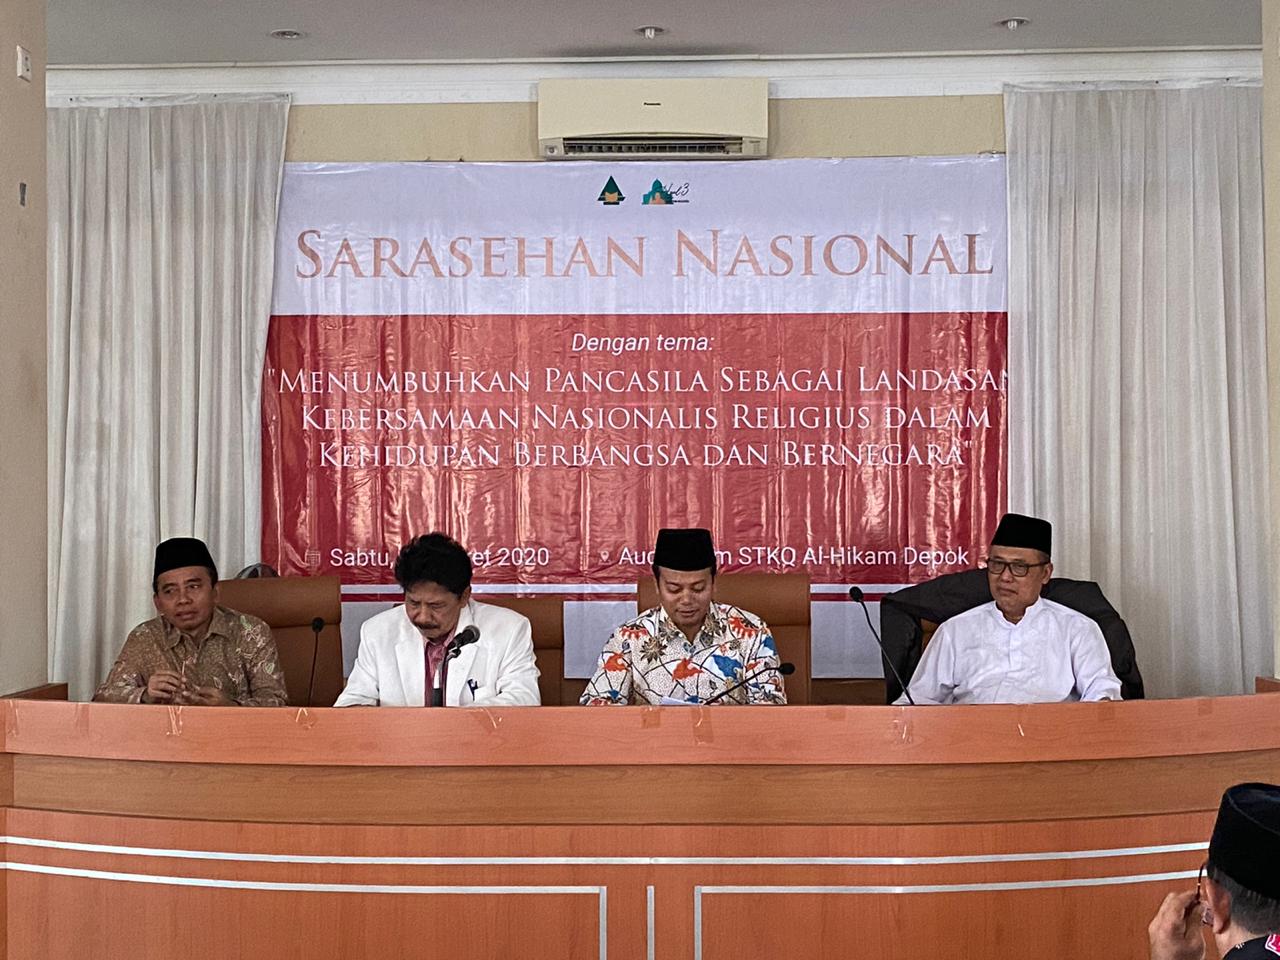 Sarasehan Nasional "Menumbuhkan Pancasila sebagai Landasan Kebersamaan Nasionalis Religius dalam Kehidupan berbangsa dan Bernegara, di Jakarta. (Foto: Istimewa)